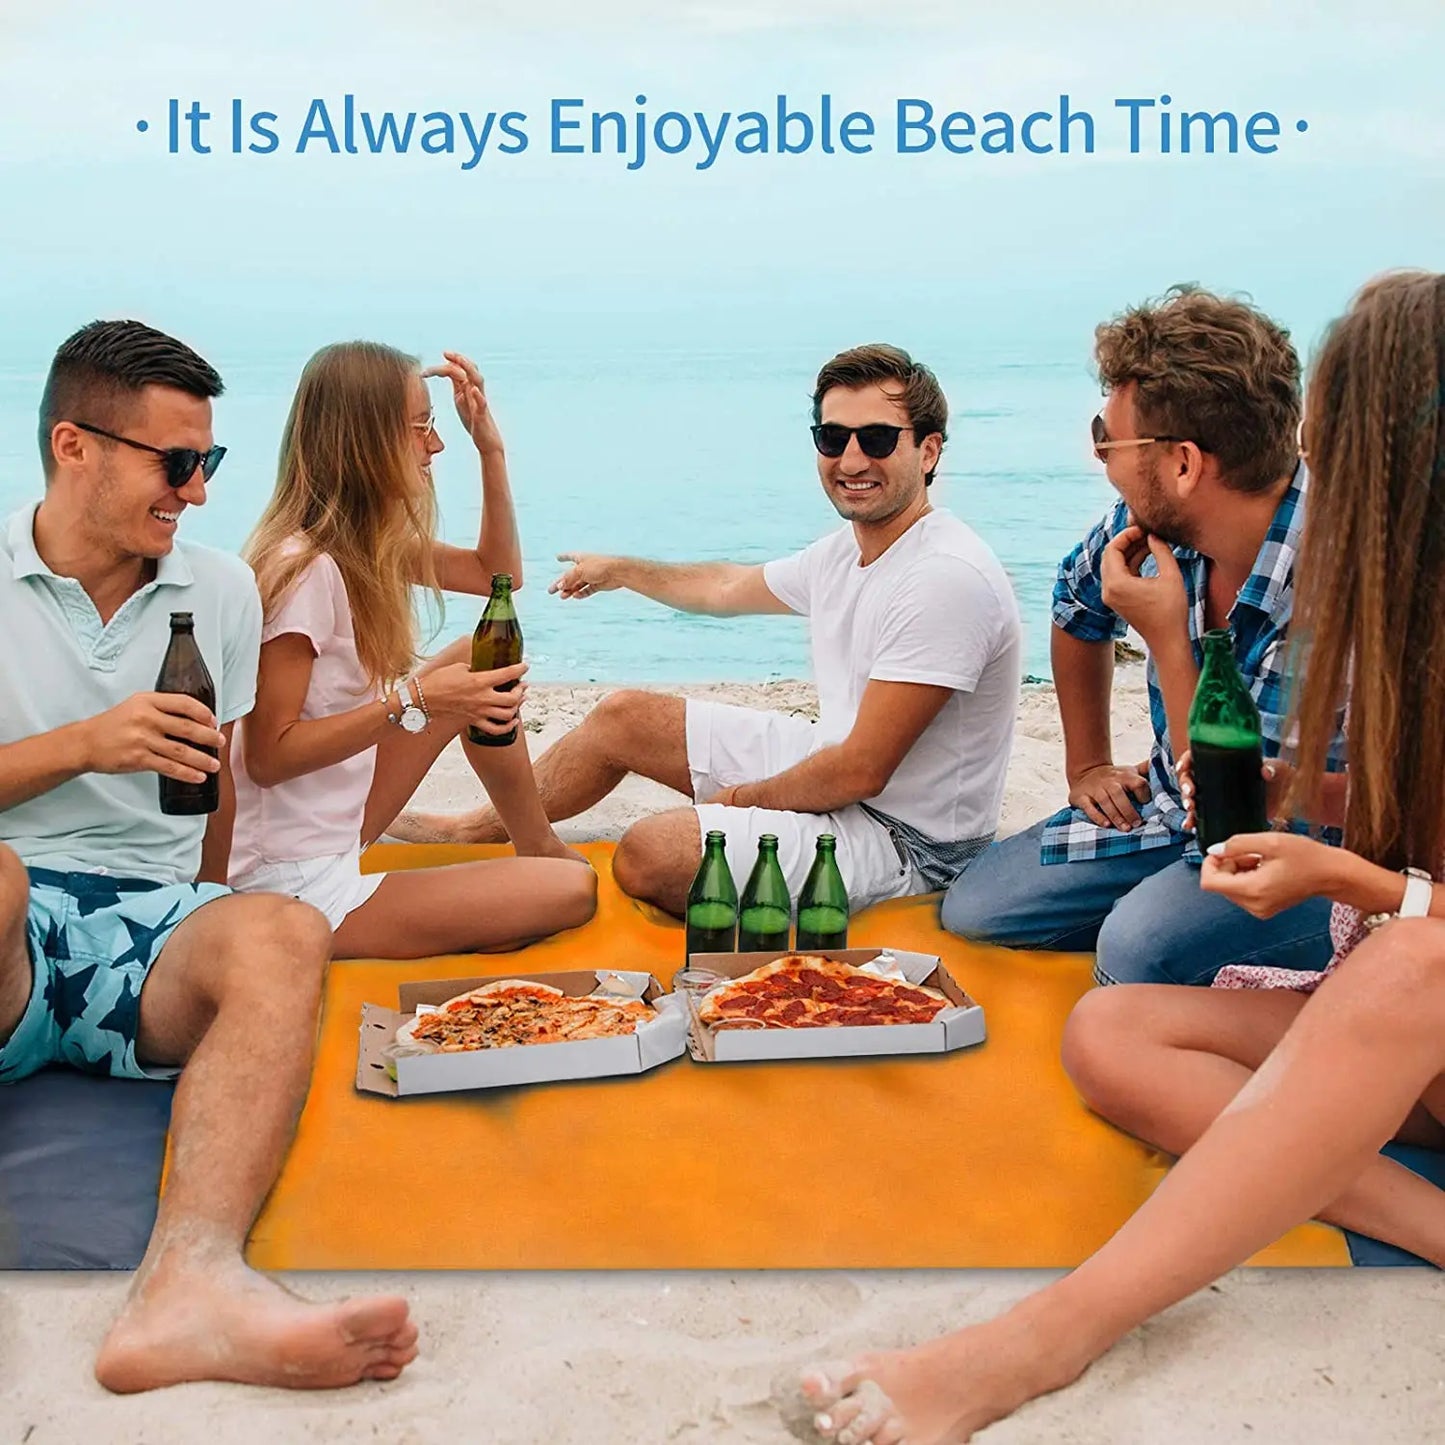 200 × 210 waterdichte zak stranddeken vouwkampingmata matras draagbare lichtgewicht mat buiten picknickmat zand strand mat